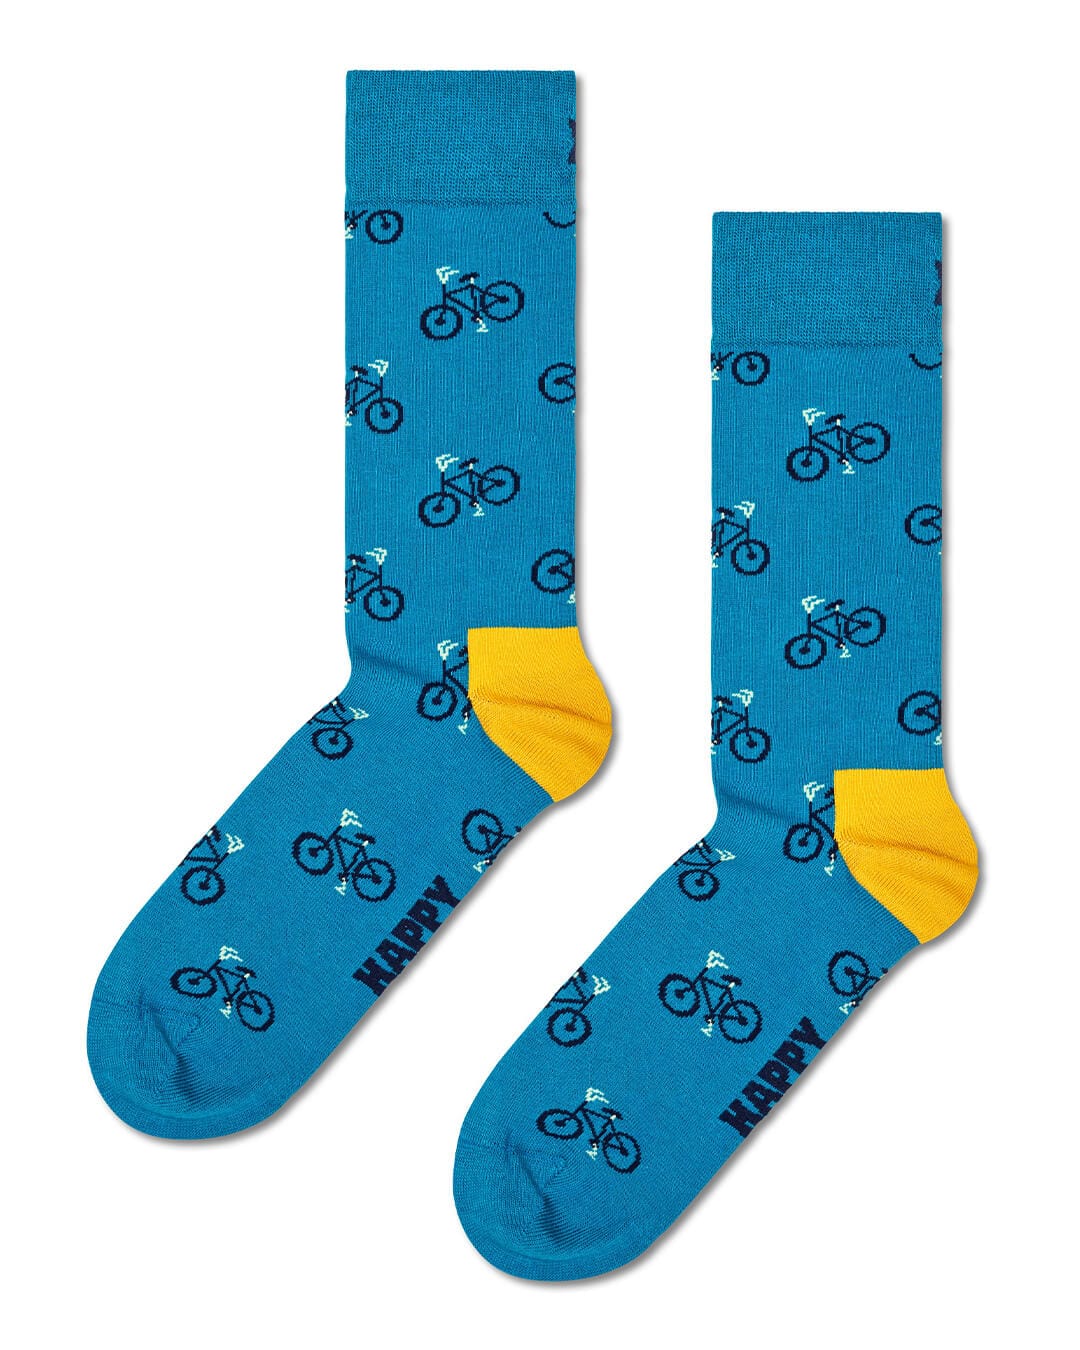 Happy Socks Socks Happy Socks Bike Socks